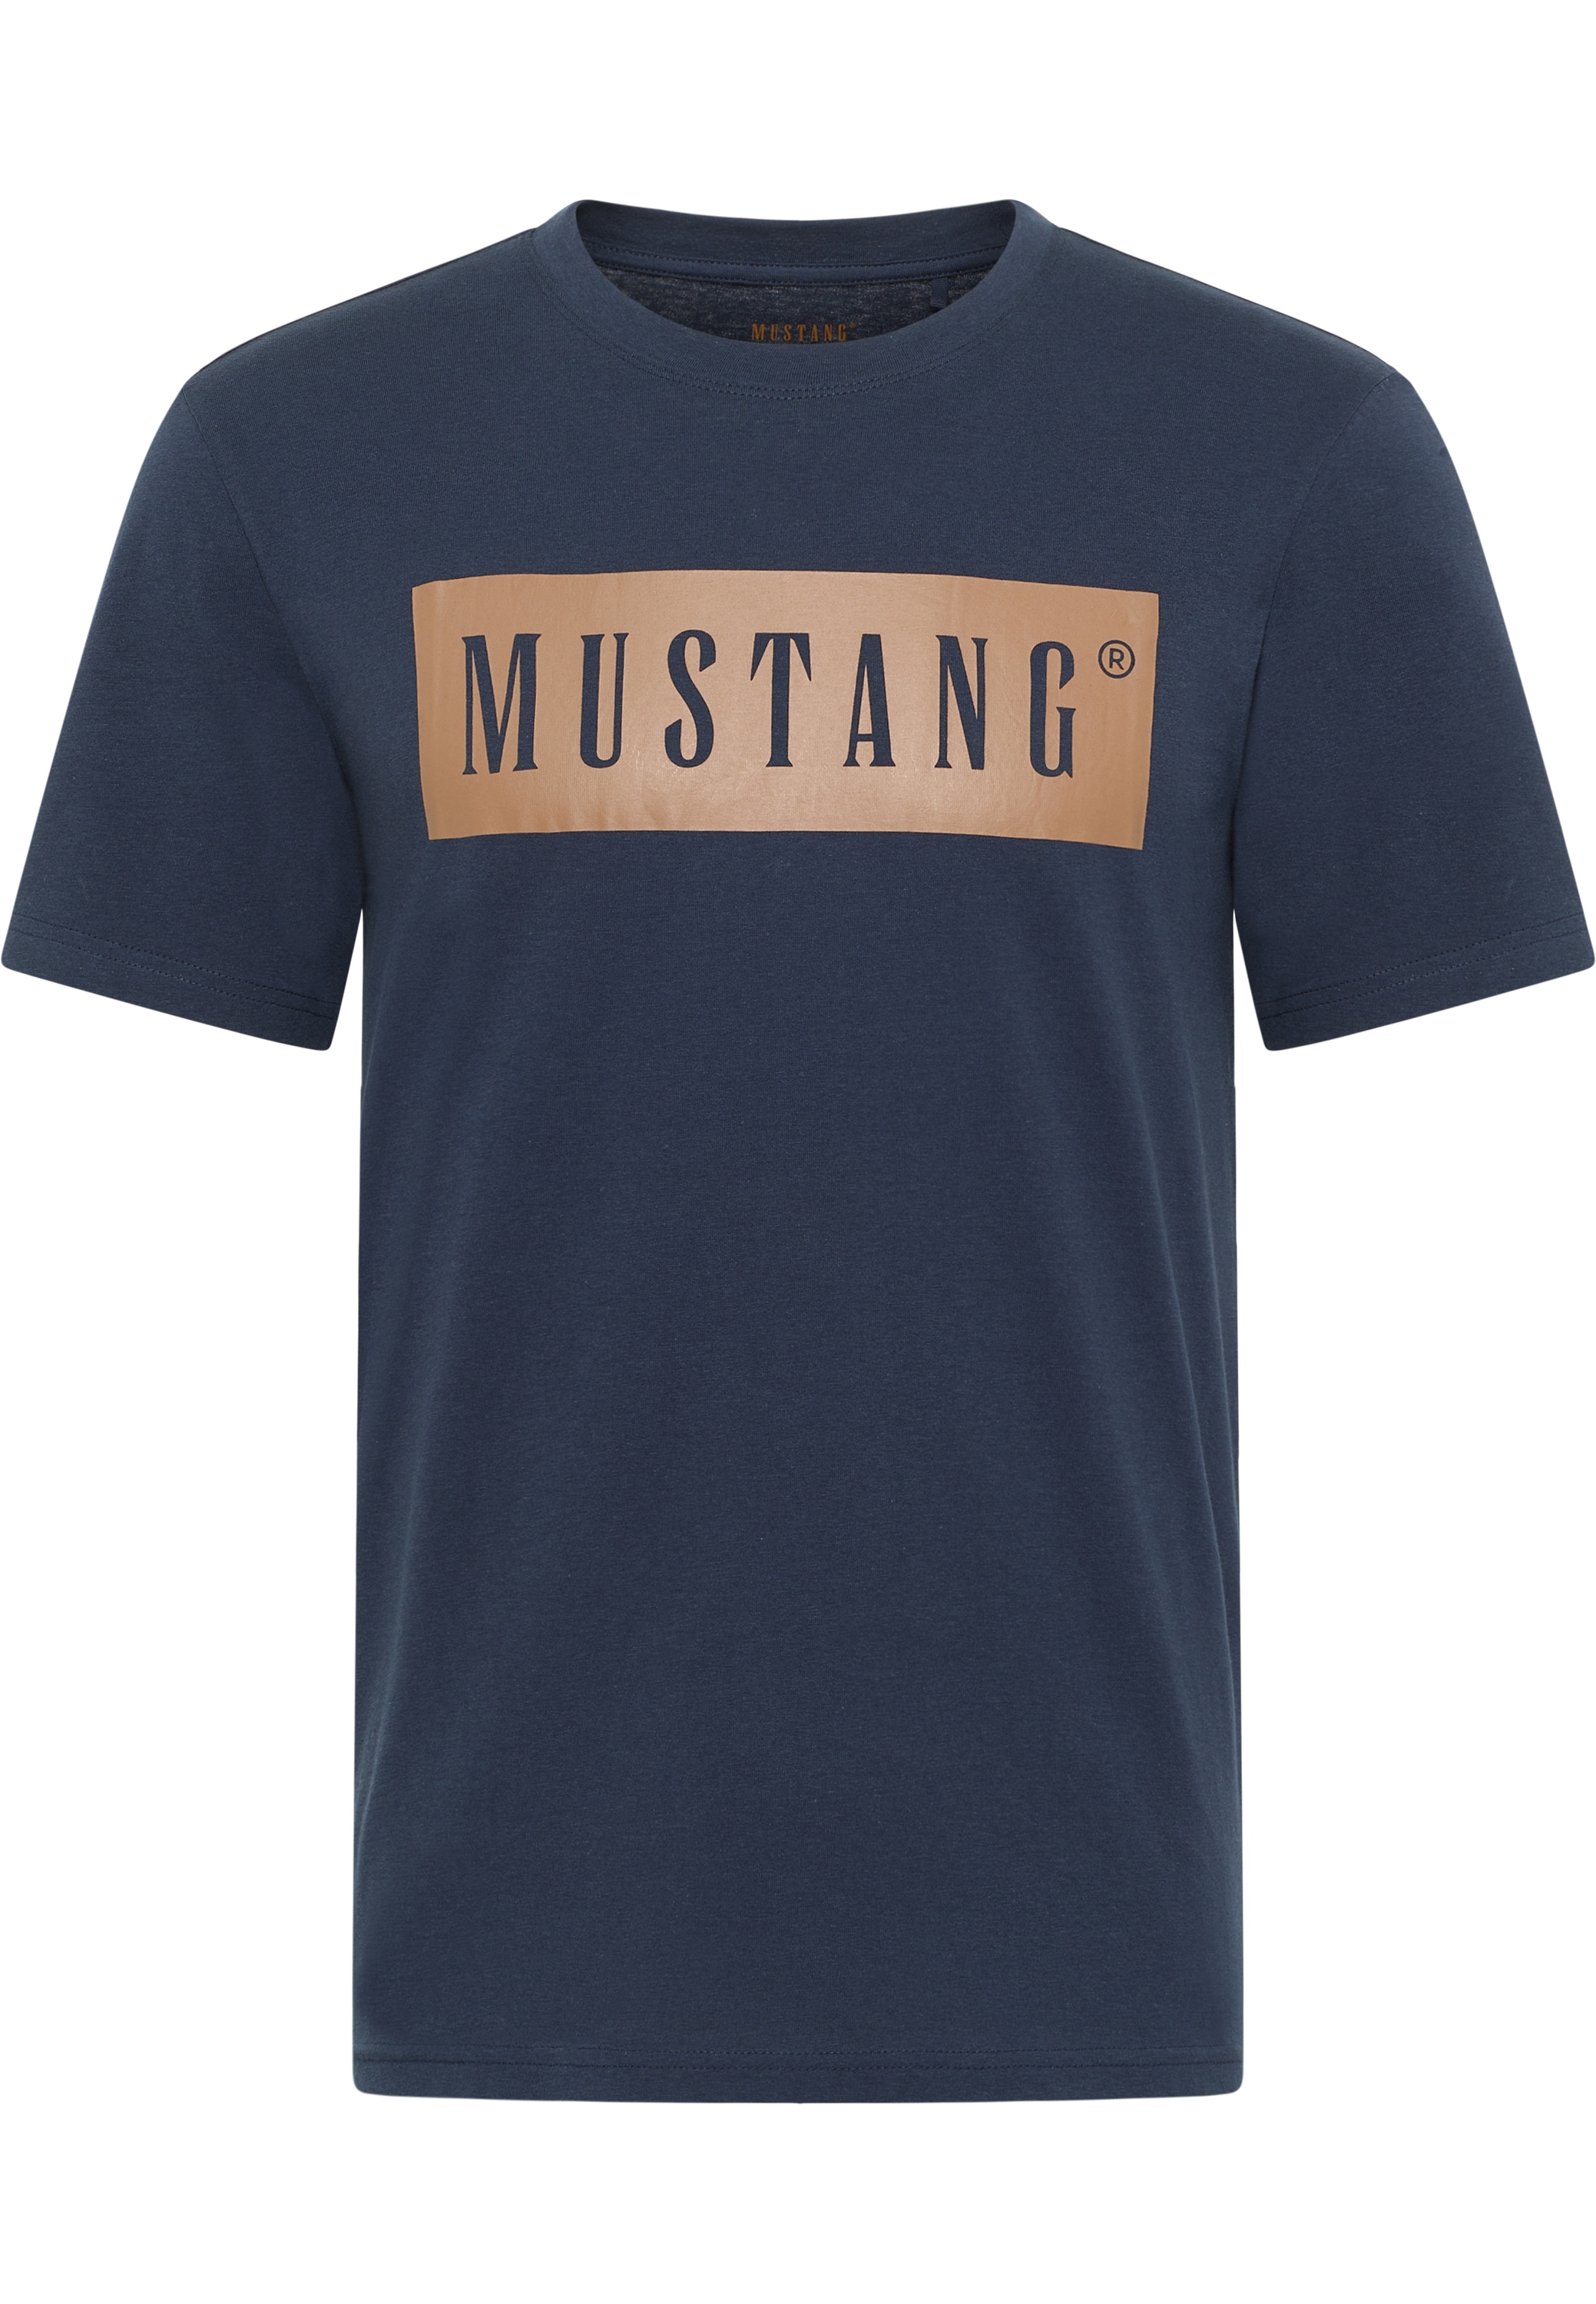 Kurzarmshirt Print-Shirt« MUSTANG online »Mustang T-Shirt bei